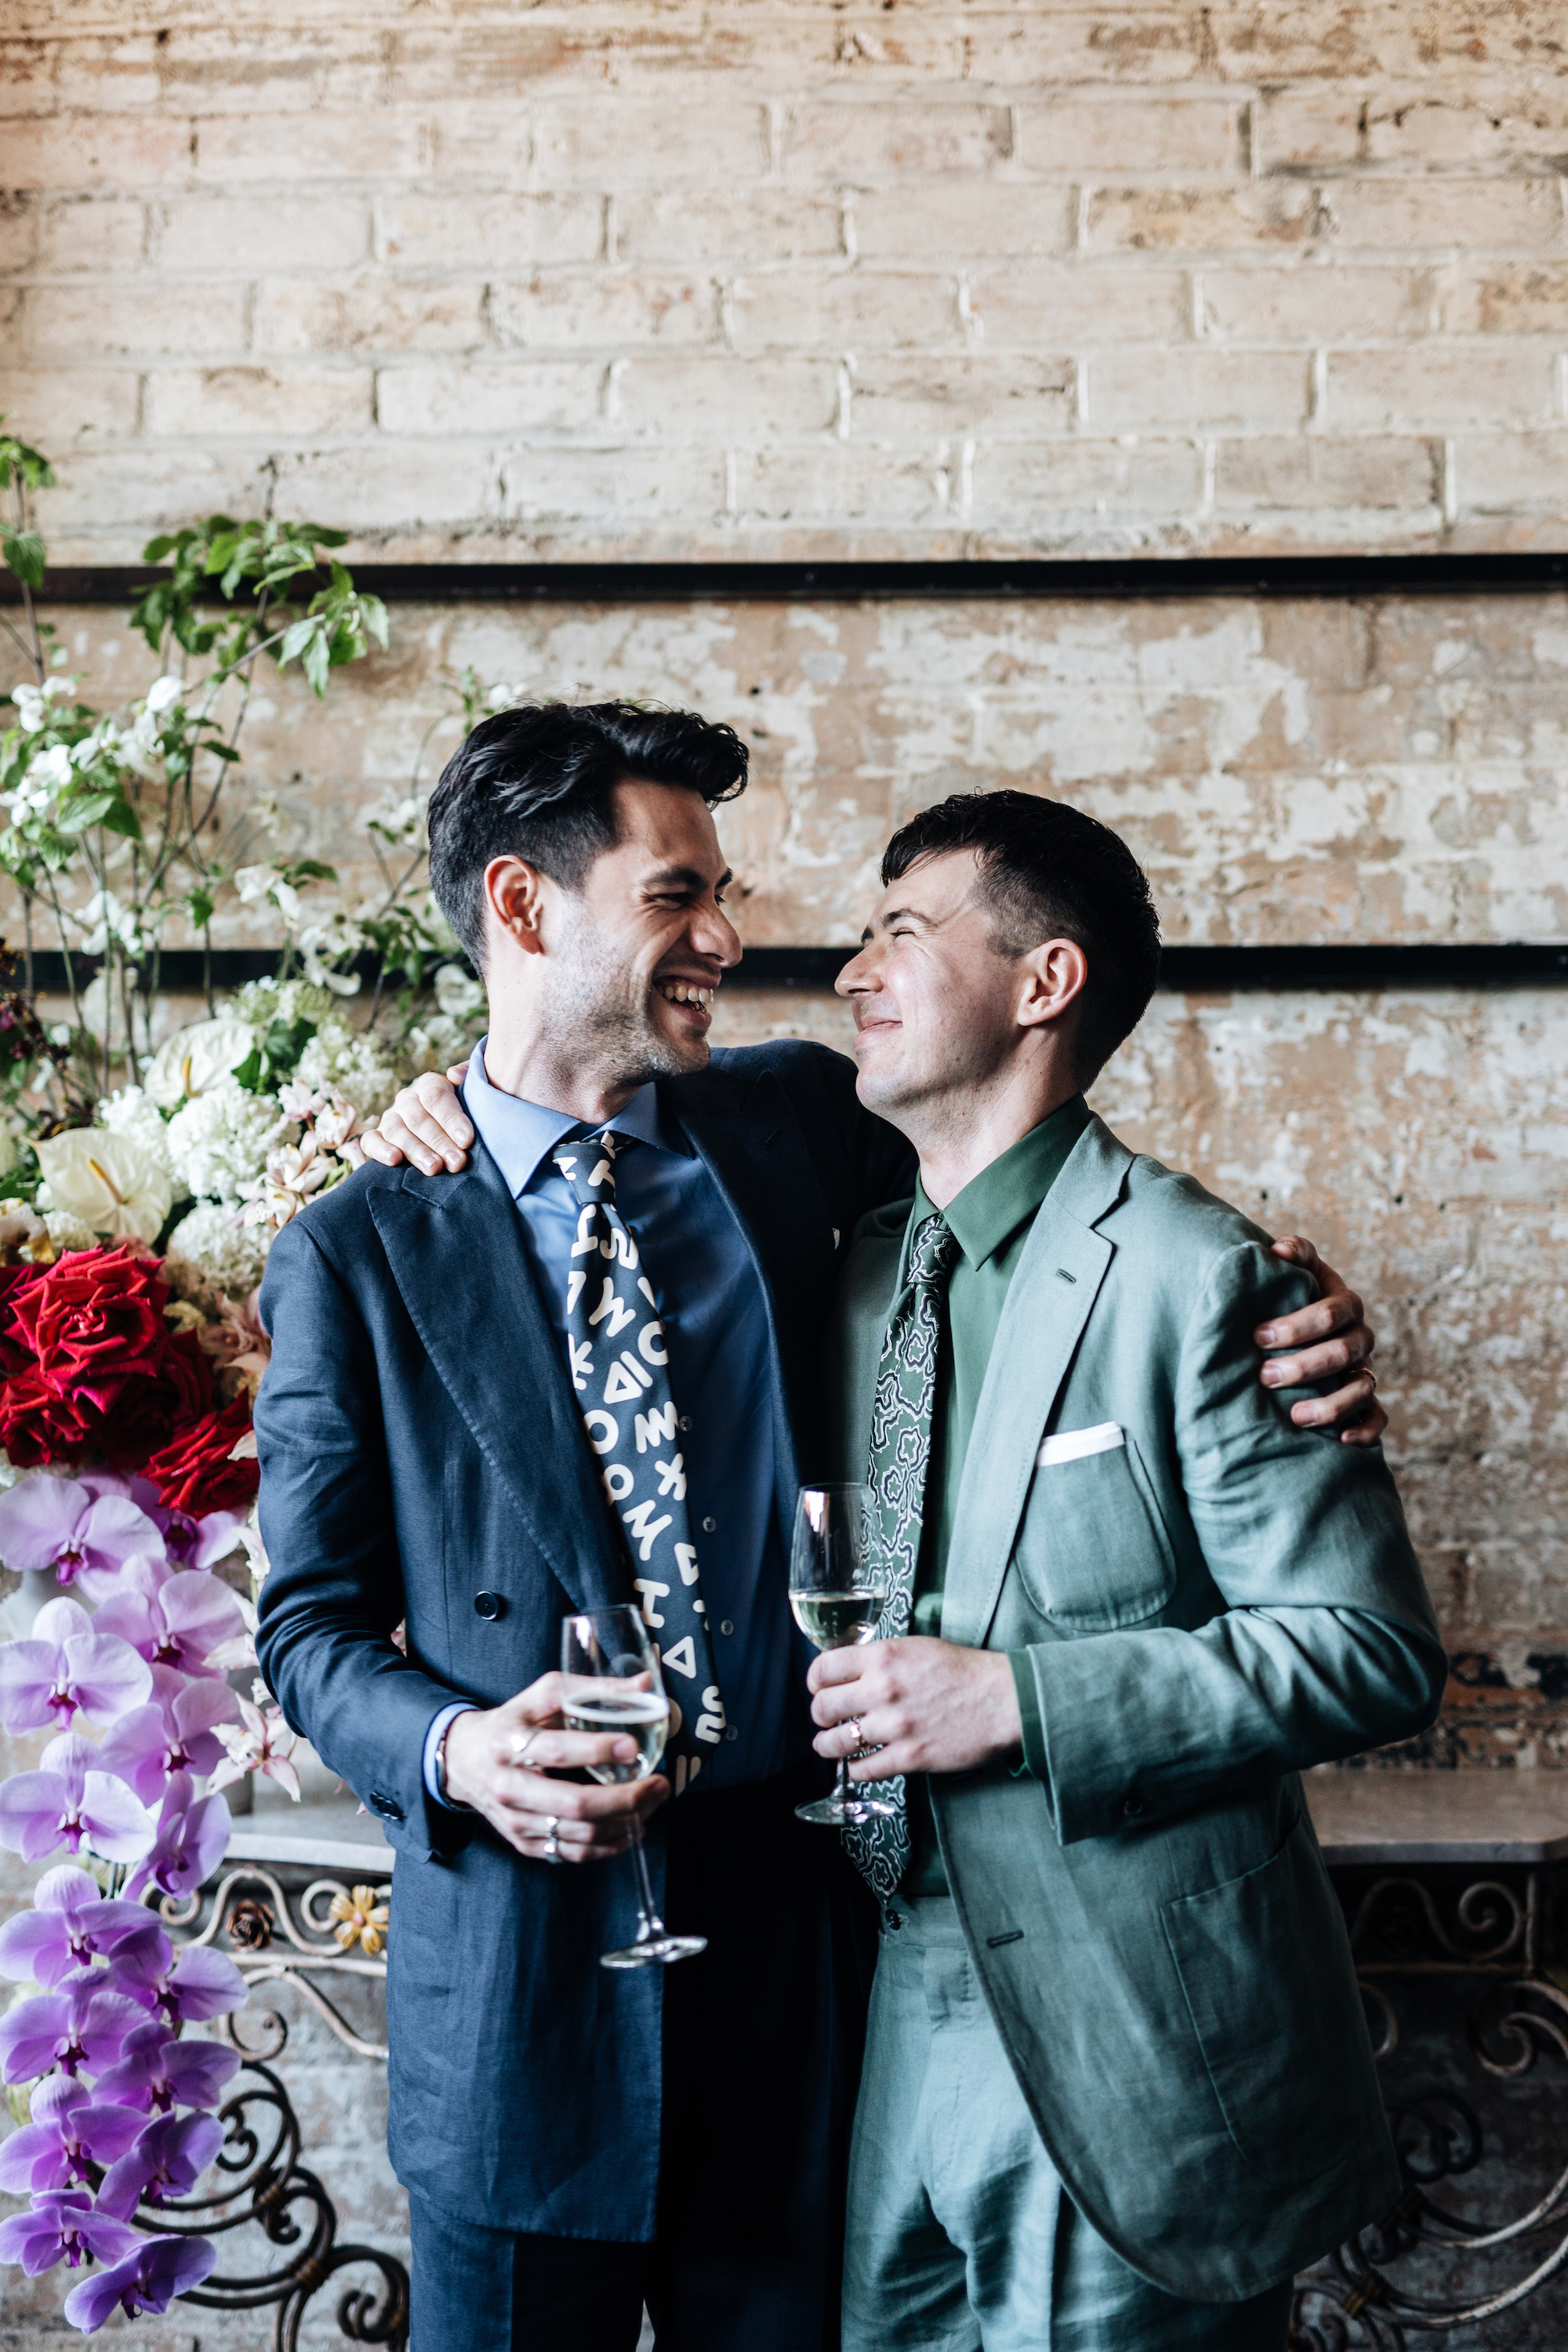 Mitch & Dane_Married 21 Oct 2018_Photo by Savannah van der Niet-182.jpg